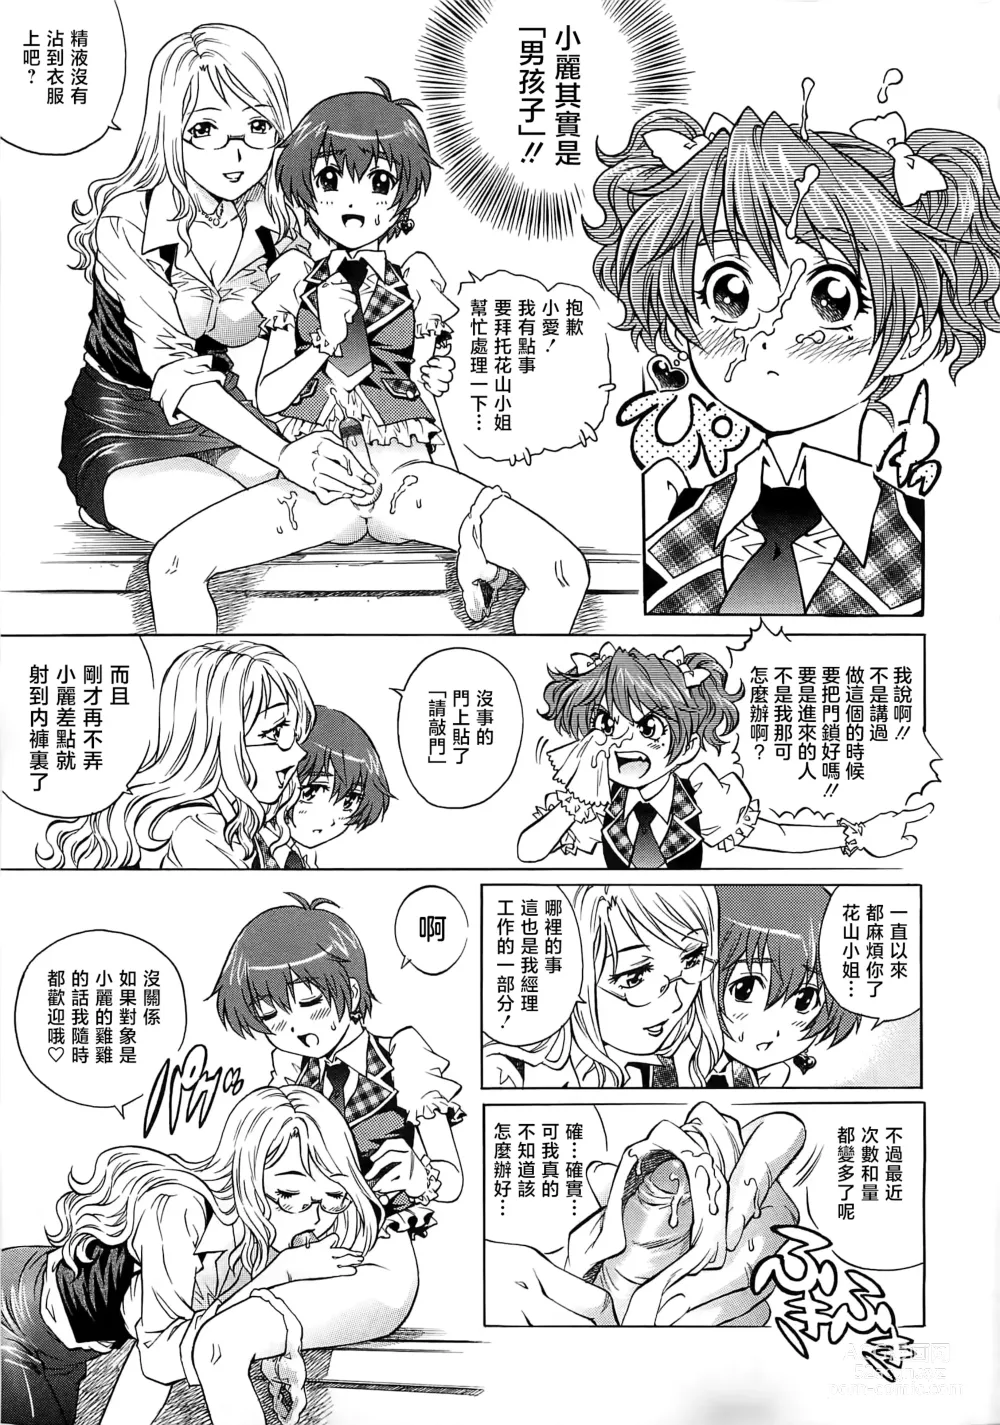 Page 24 of manga Bokutachi Otokonoko